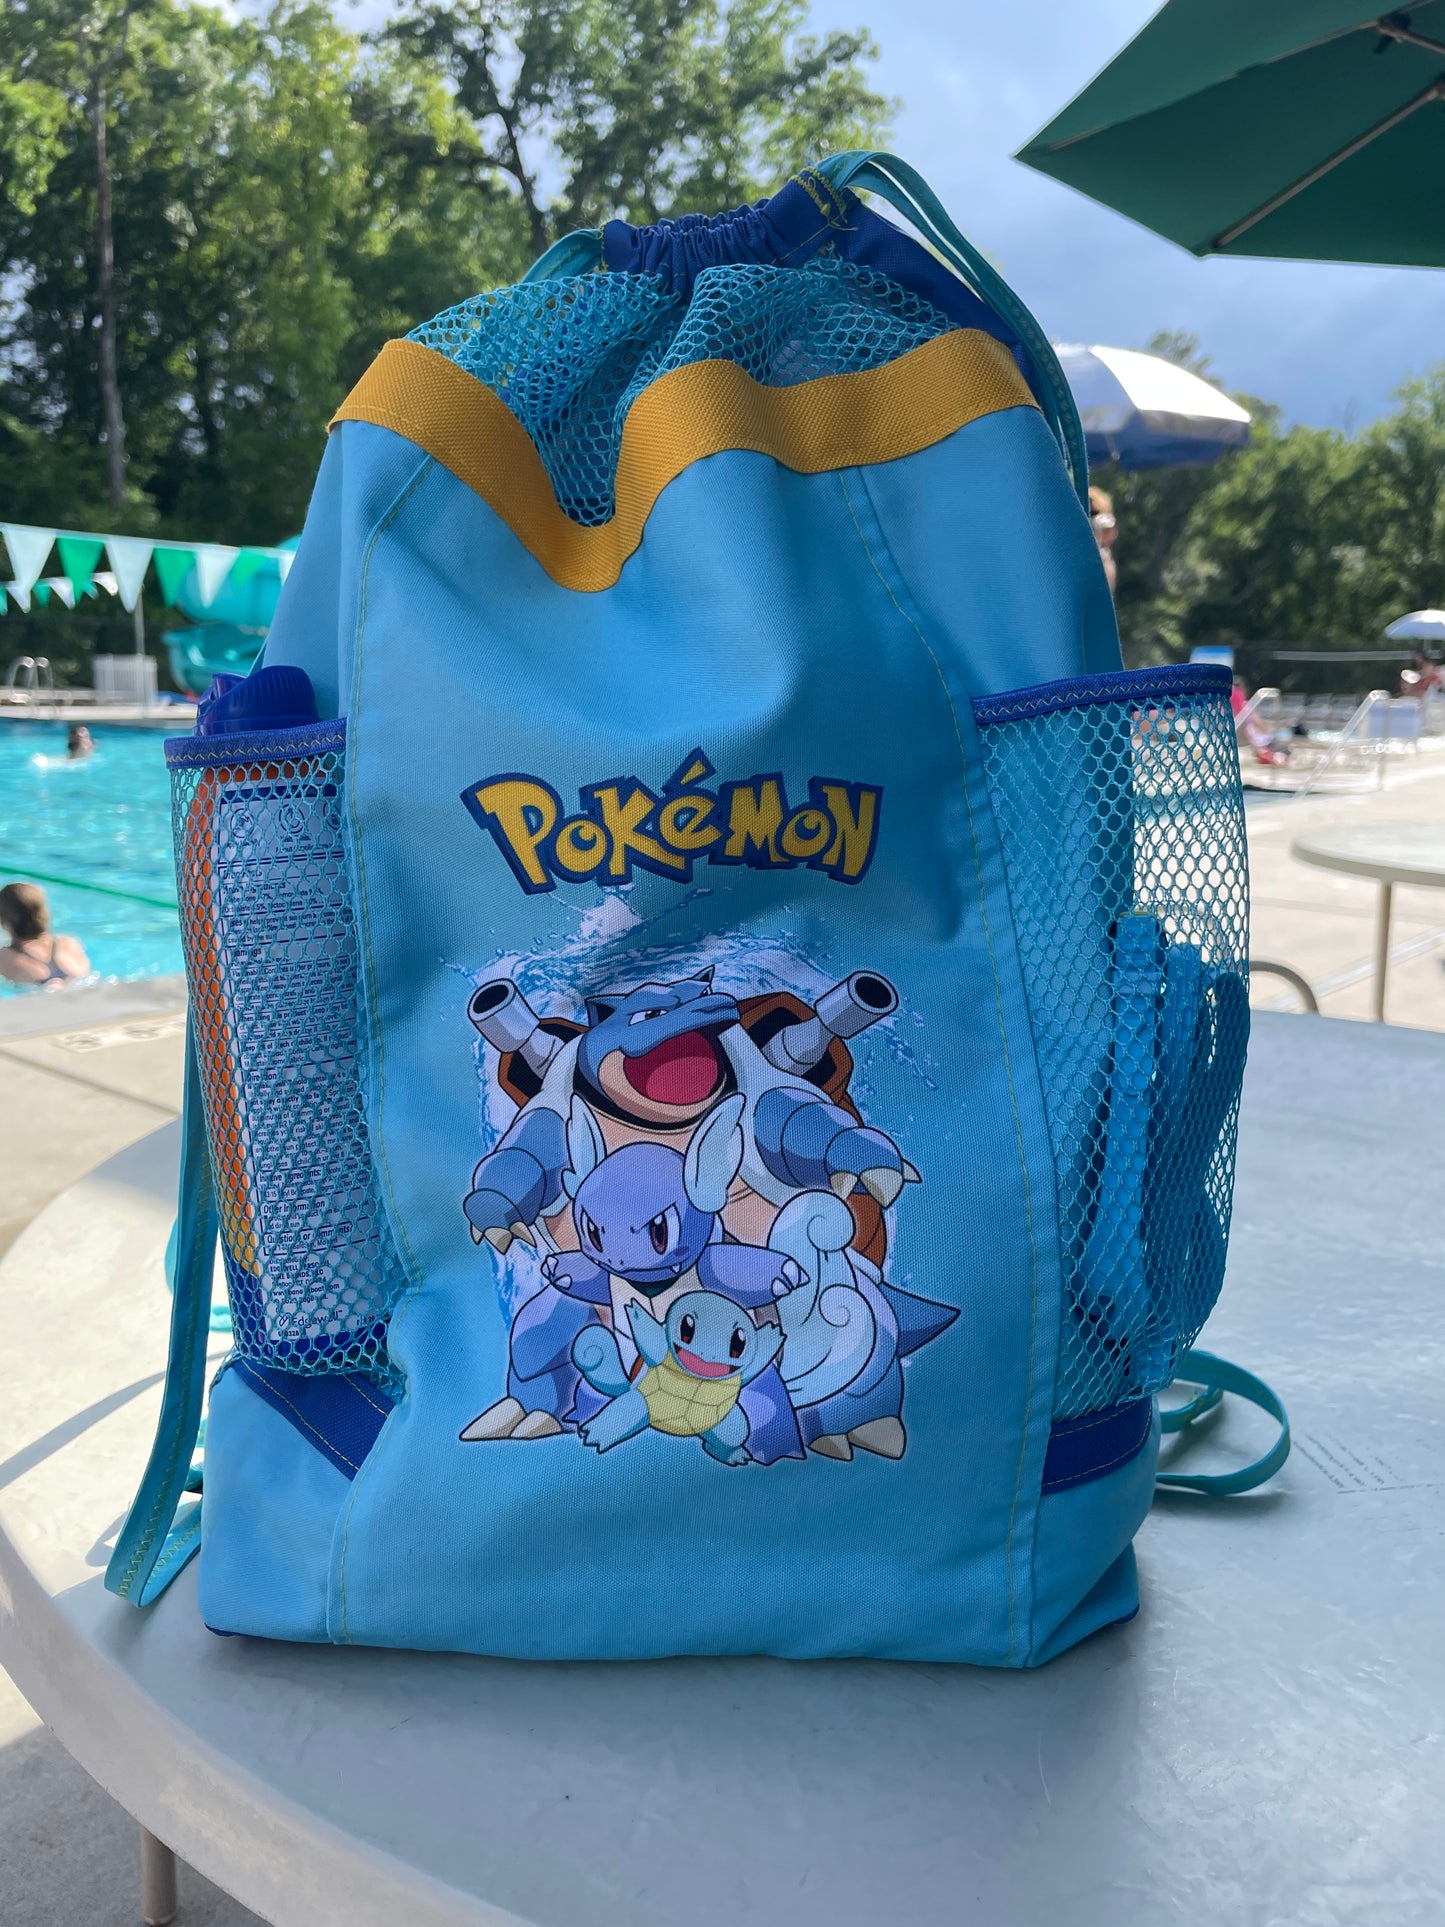 Pokémon Pool & Beach Backpack